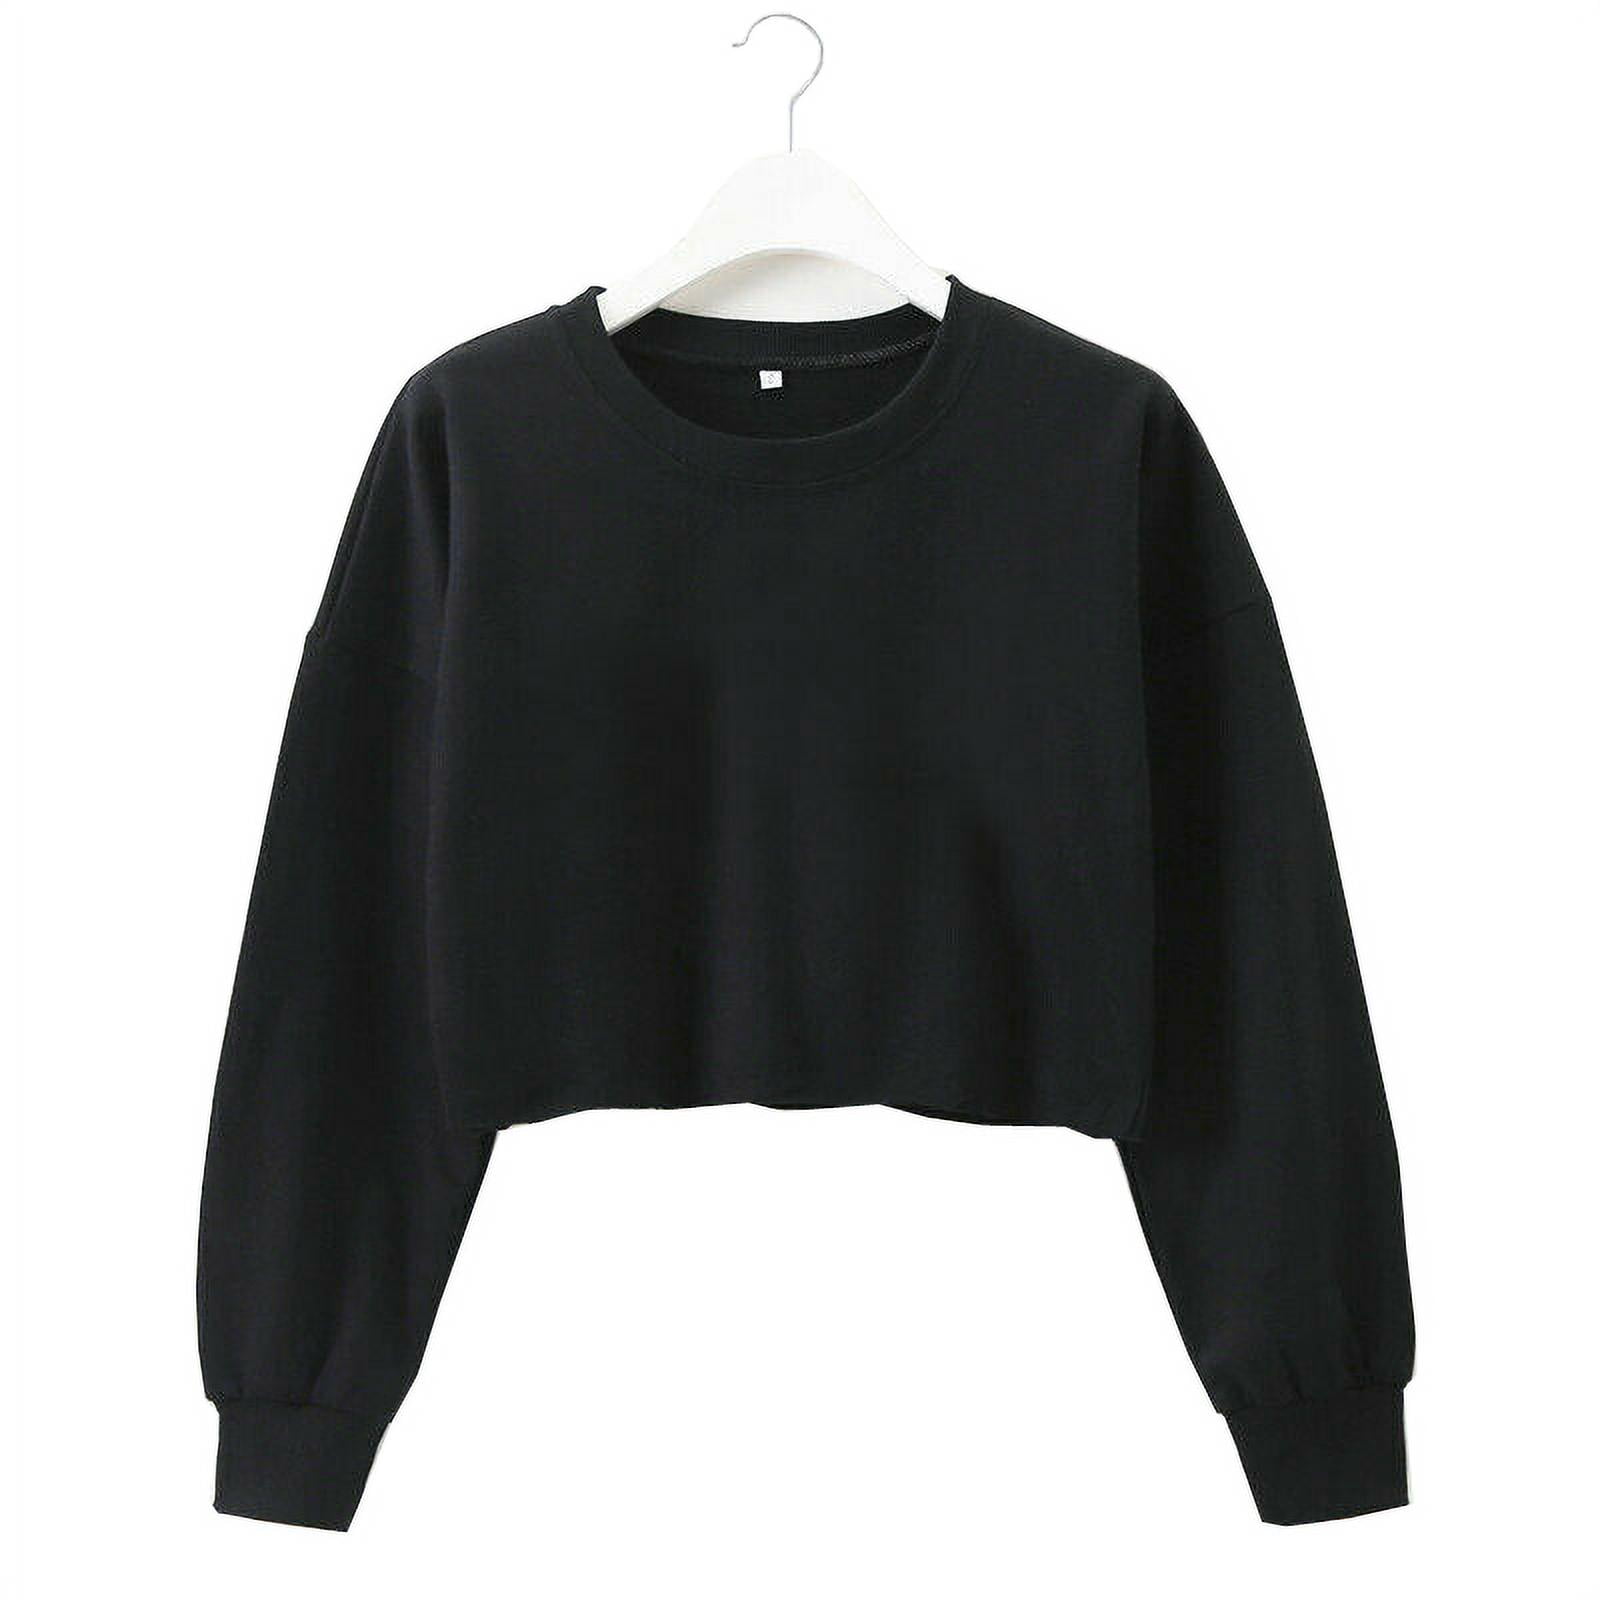 Women Casual Long Sleeve Sweatshirt Jumper T-shirt Crop Top Pullover ...